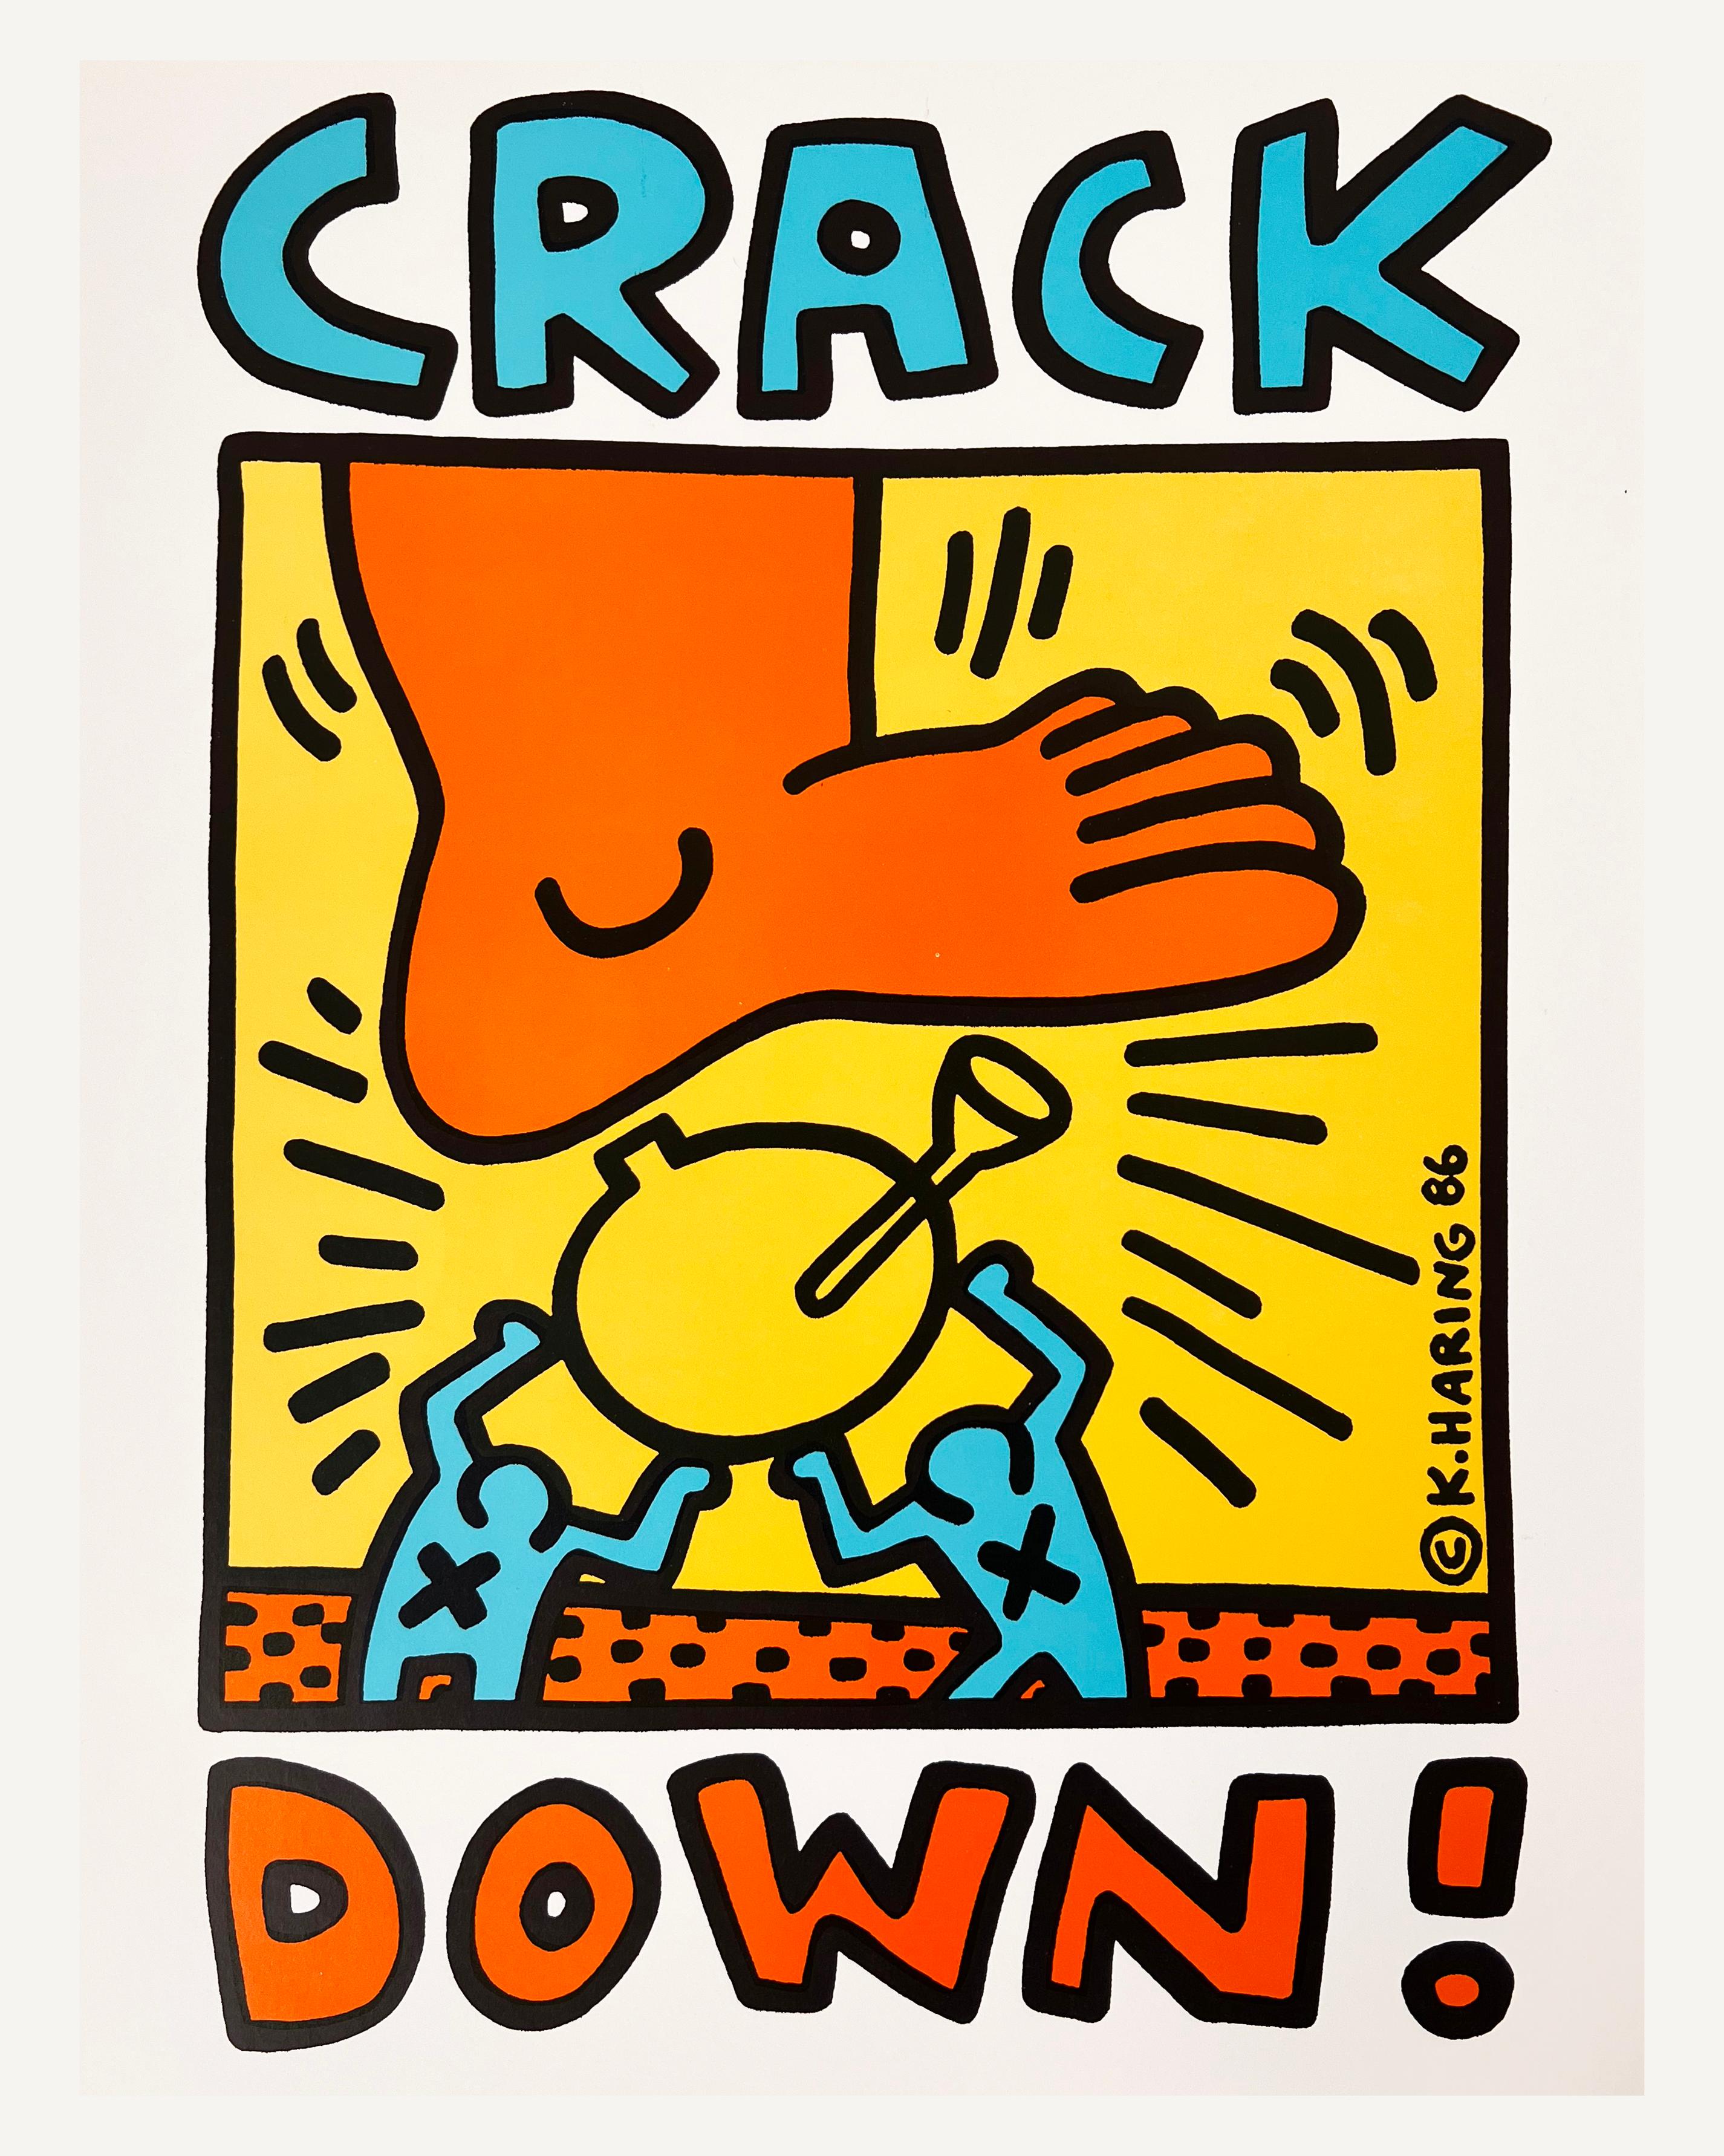 Keith Haring : le coup de grâce ! 1986 :
Affiche originale vintage Keith Haring contre la drogue, 1986.

Lithographie décalée sur papier épais. 
Dimensions : 17 x 22 pouces.
Signes mineurs de manipulation ; autrement excellente condition ; couleurs